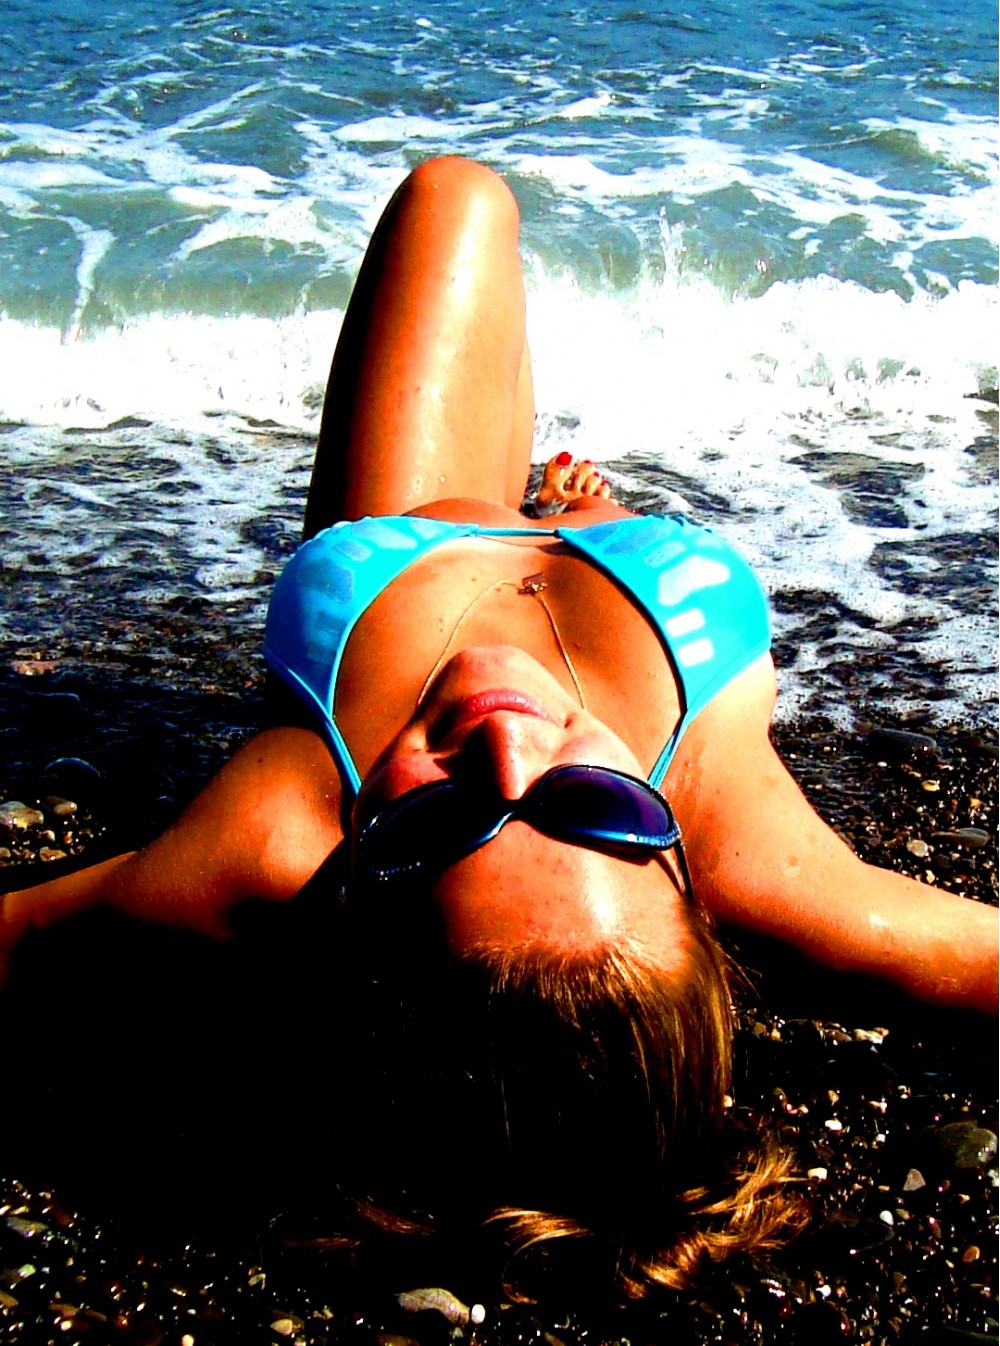 Лето, солнце, море, пляж... | Фотогалерея, Мариуполь